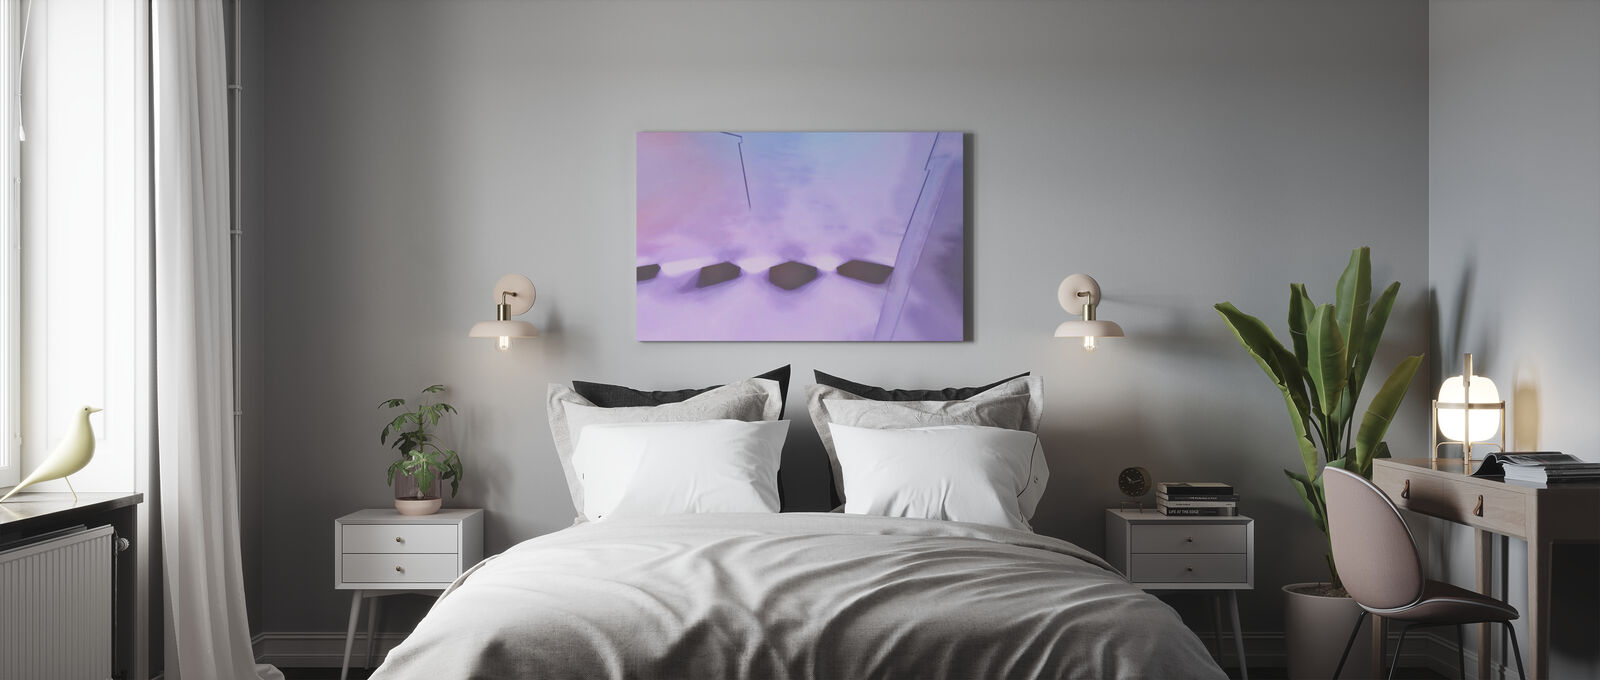 アートパネル 10cm単位でサイズオーダーできる 絵画 壁掛け インテリア 壁飾り キャンバス アート ウォール 抽象画 紫 パープル Butlerchimneys Com